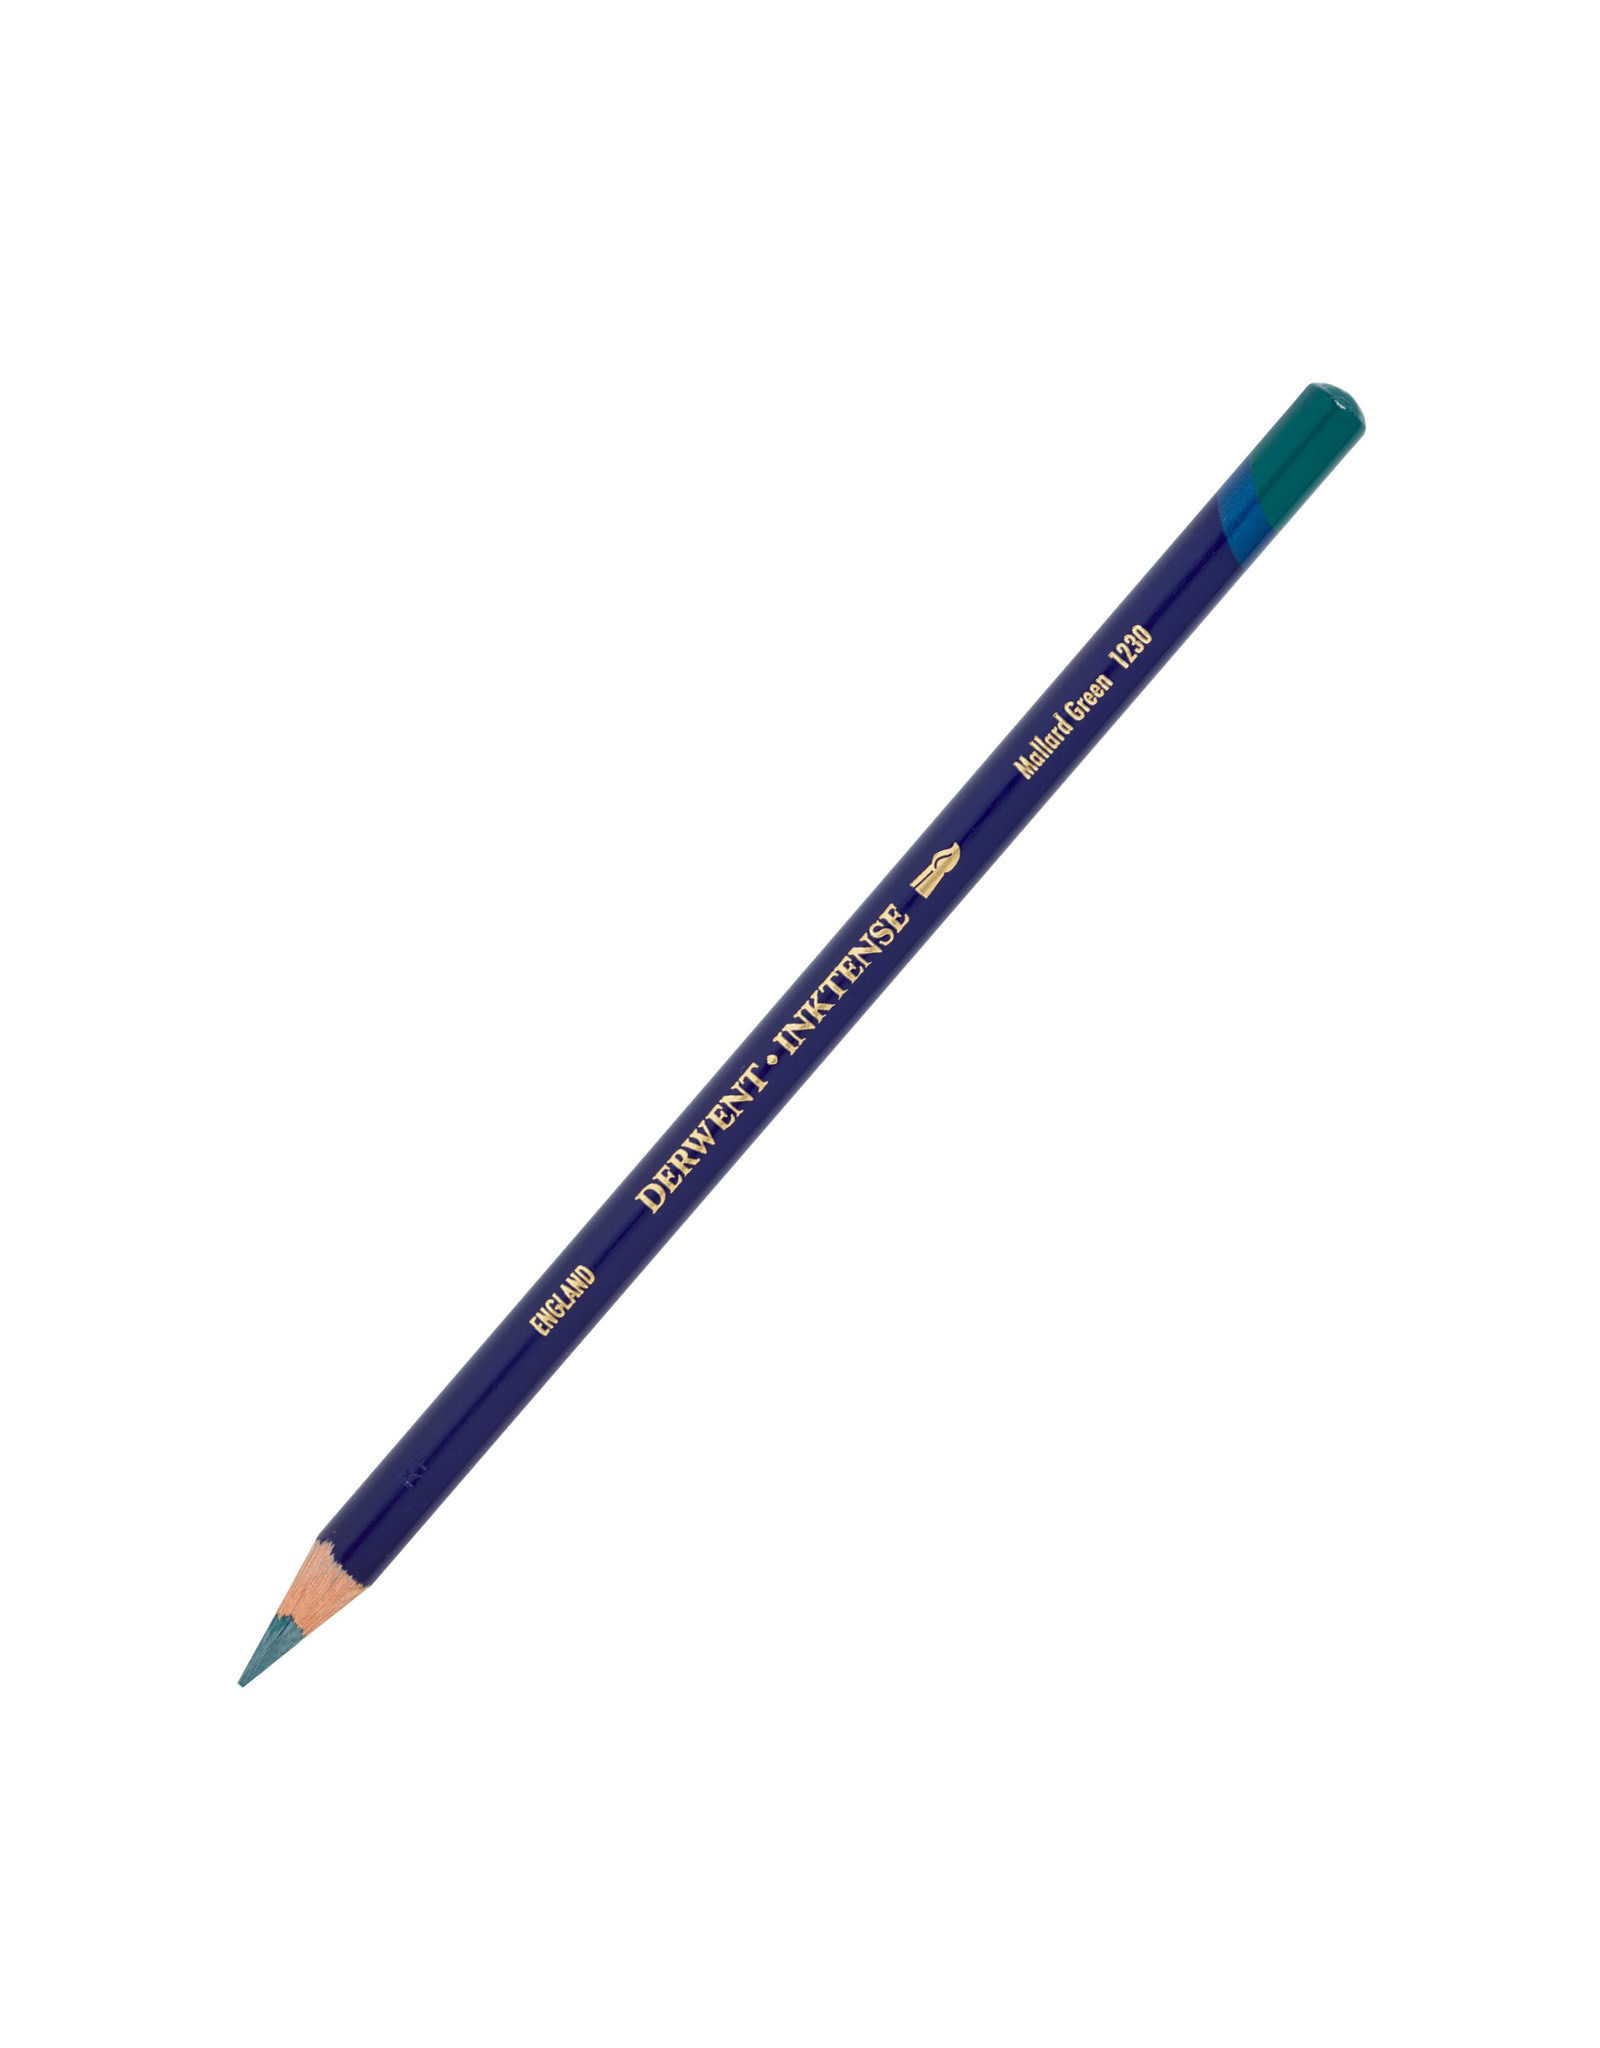 Derwent Derwent Inktense Pencil, Mallard Green